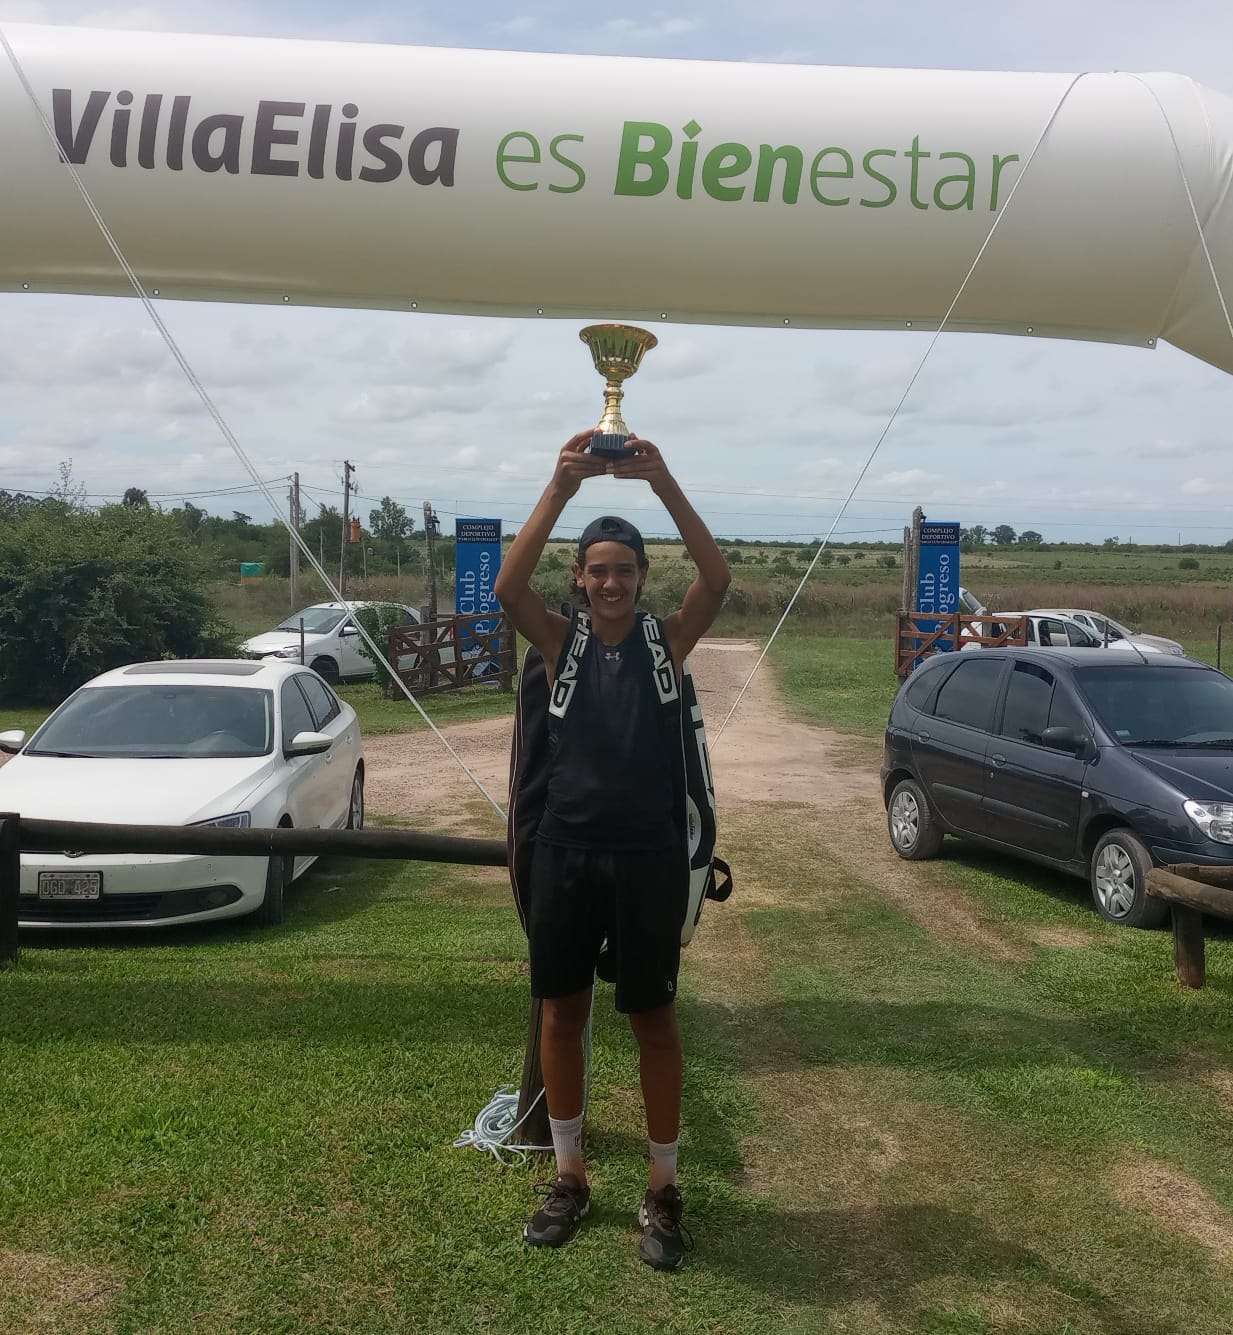 Cabaña se consagró campeón en Villa Elisa